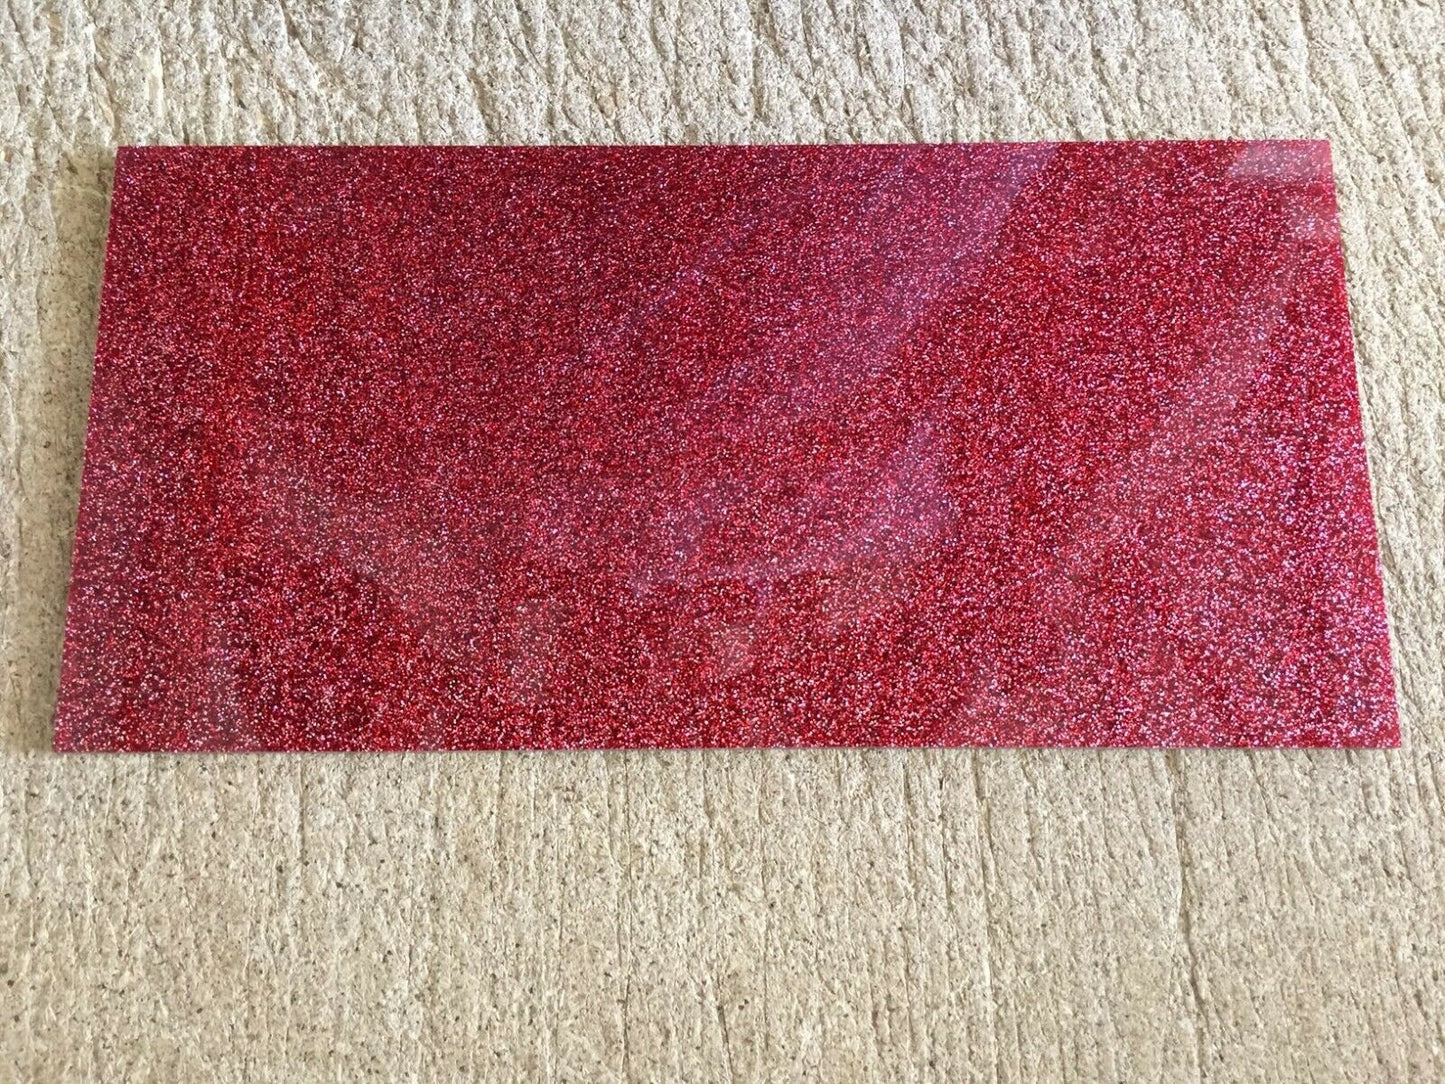 Kirinite Glitter Red Sparkle 1/8" x 6" x 12" Sheet - UK Pen Blanks